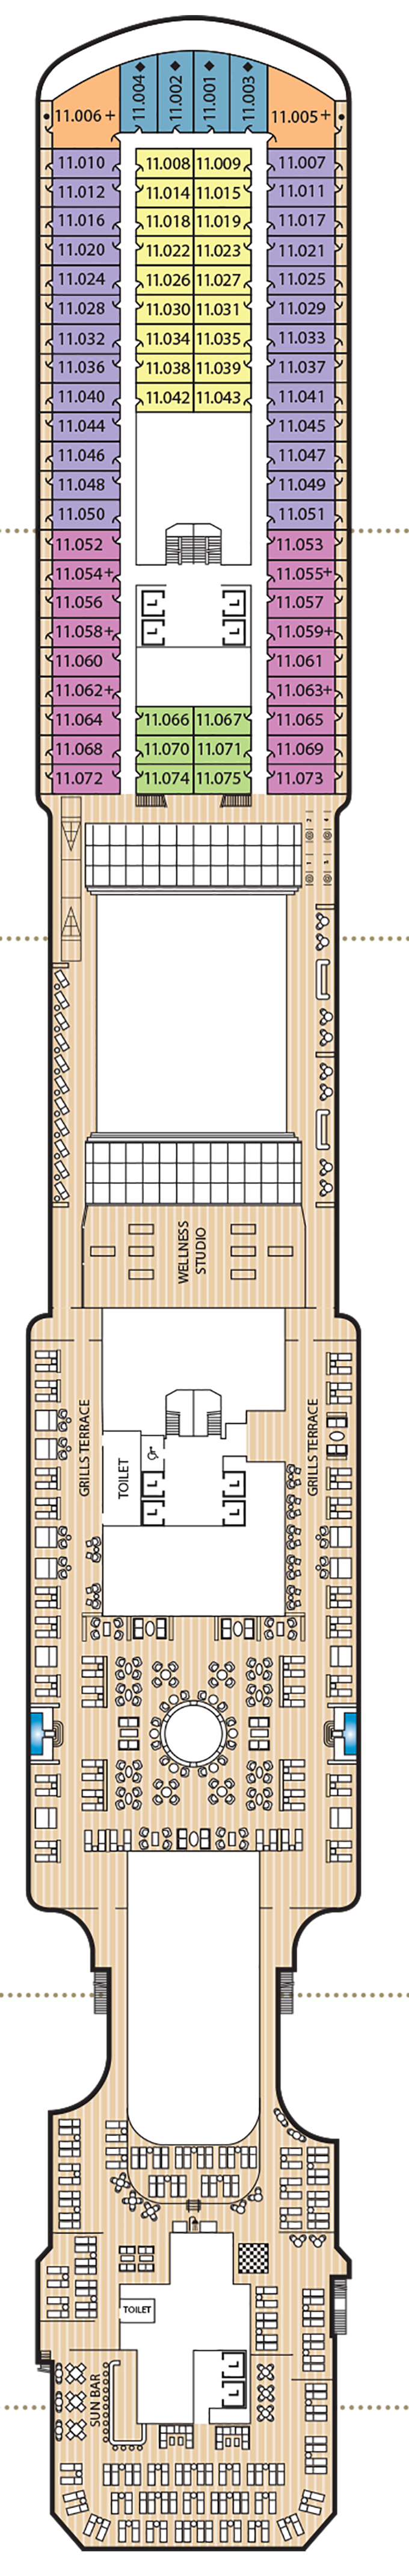 Queen Anne - Decksplan Deck 11